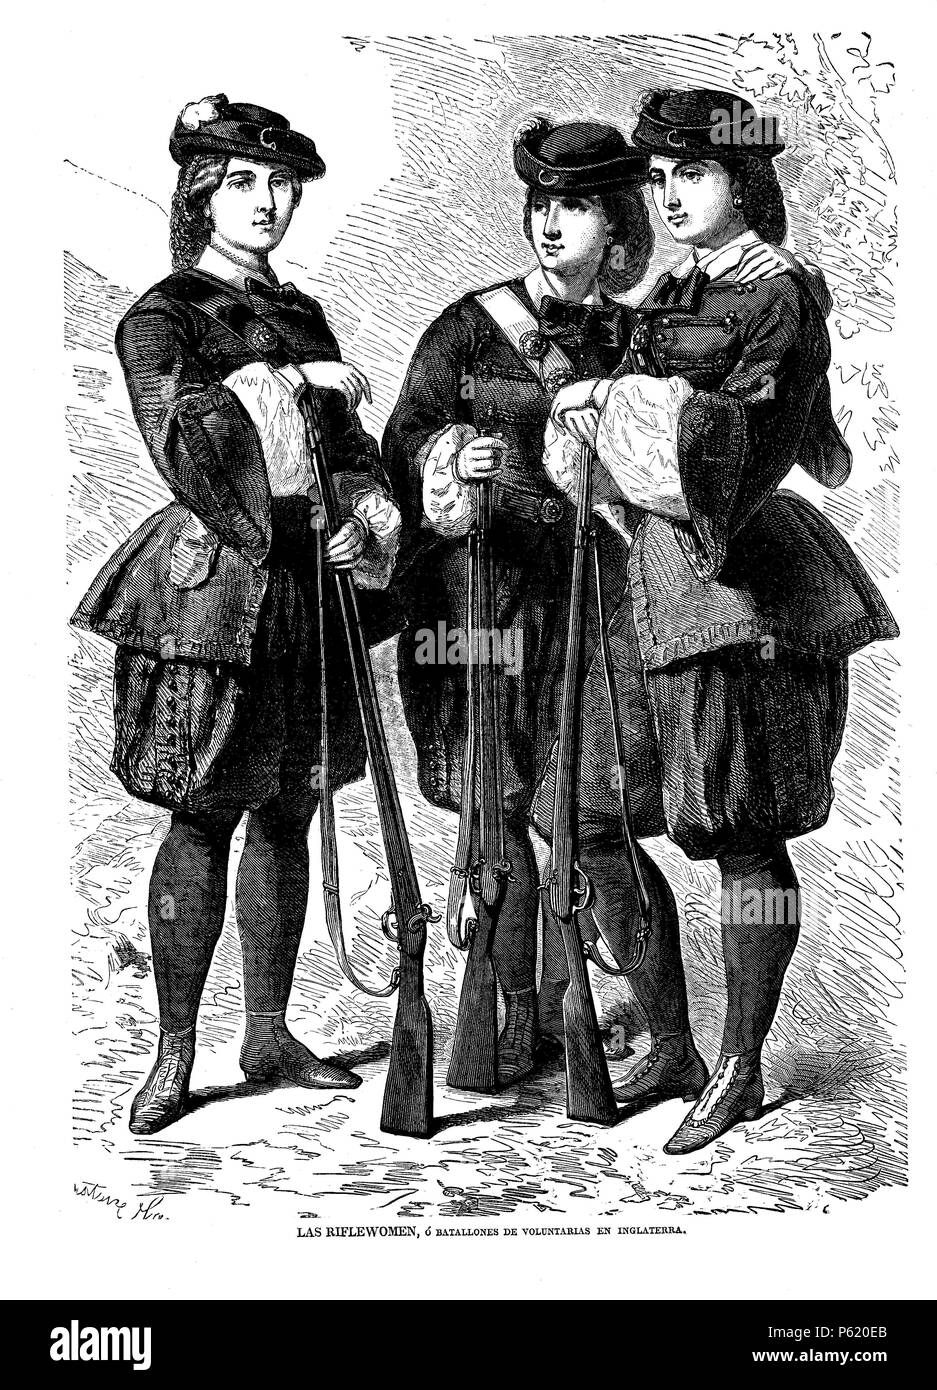 Batallones de voluntarias inglesas, movimiento militarista femenino conocido Como las "riflewomen'. Grabado de 1860. Stockfoto